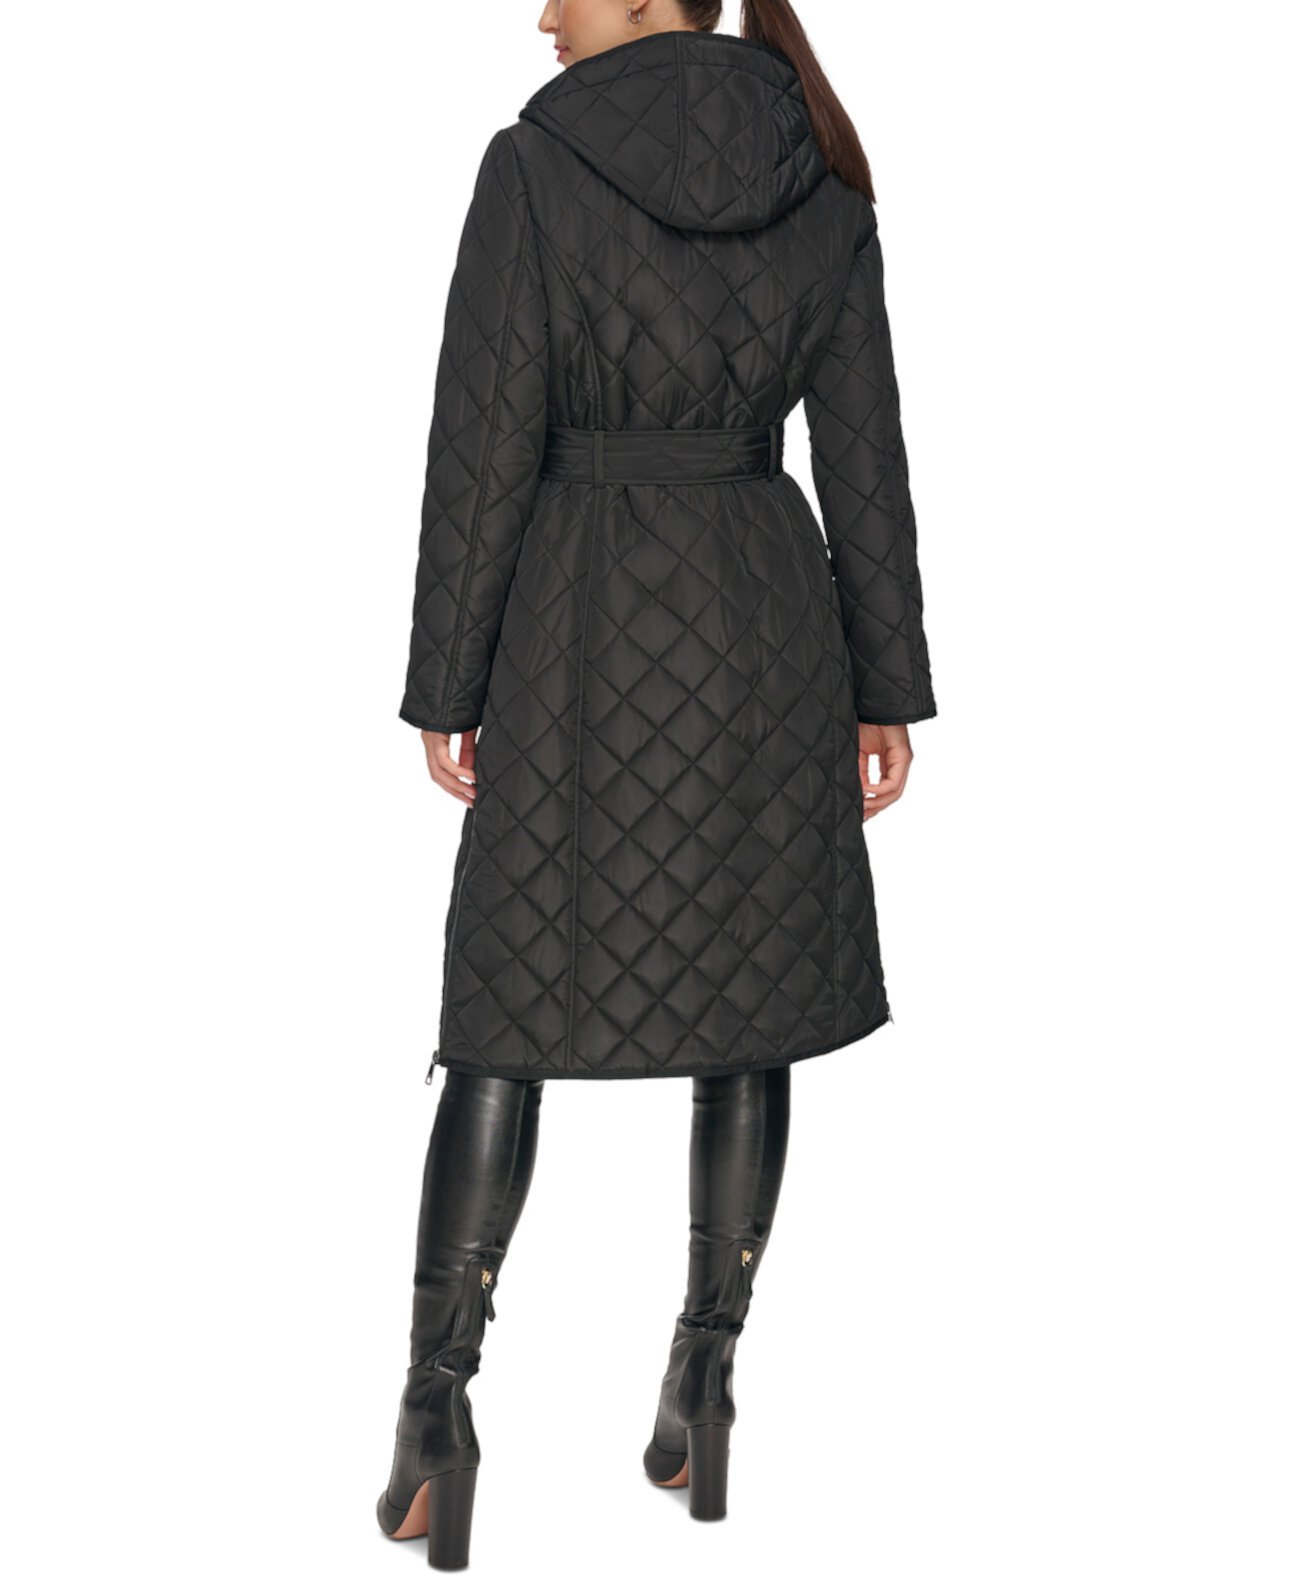 Женское Стеганое Пальто с Поясом и Капюшоном DKNY DKNY